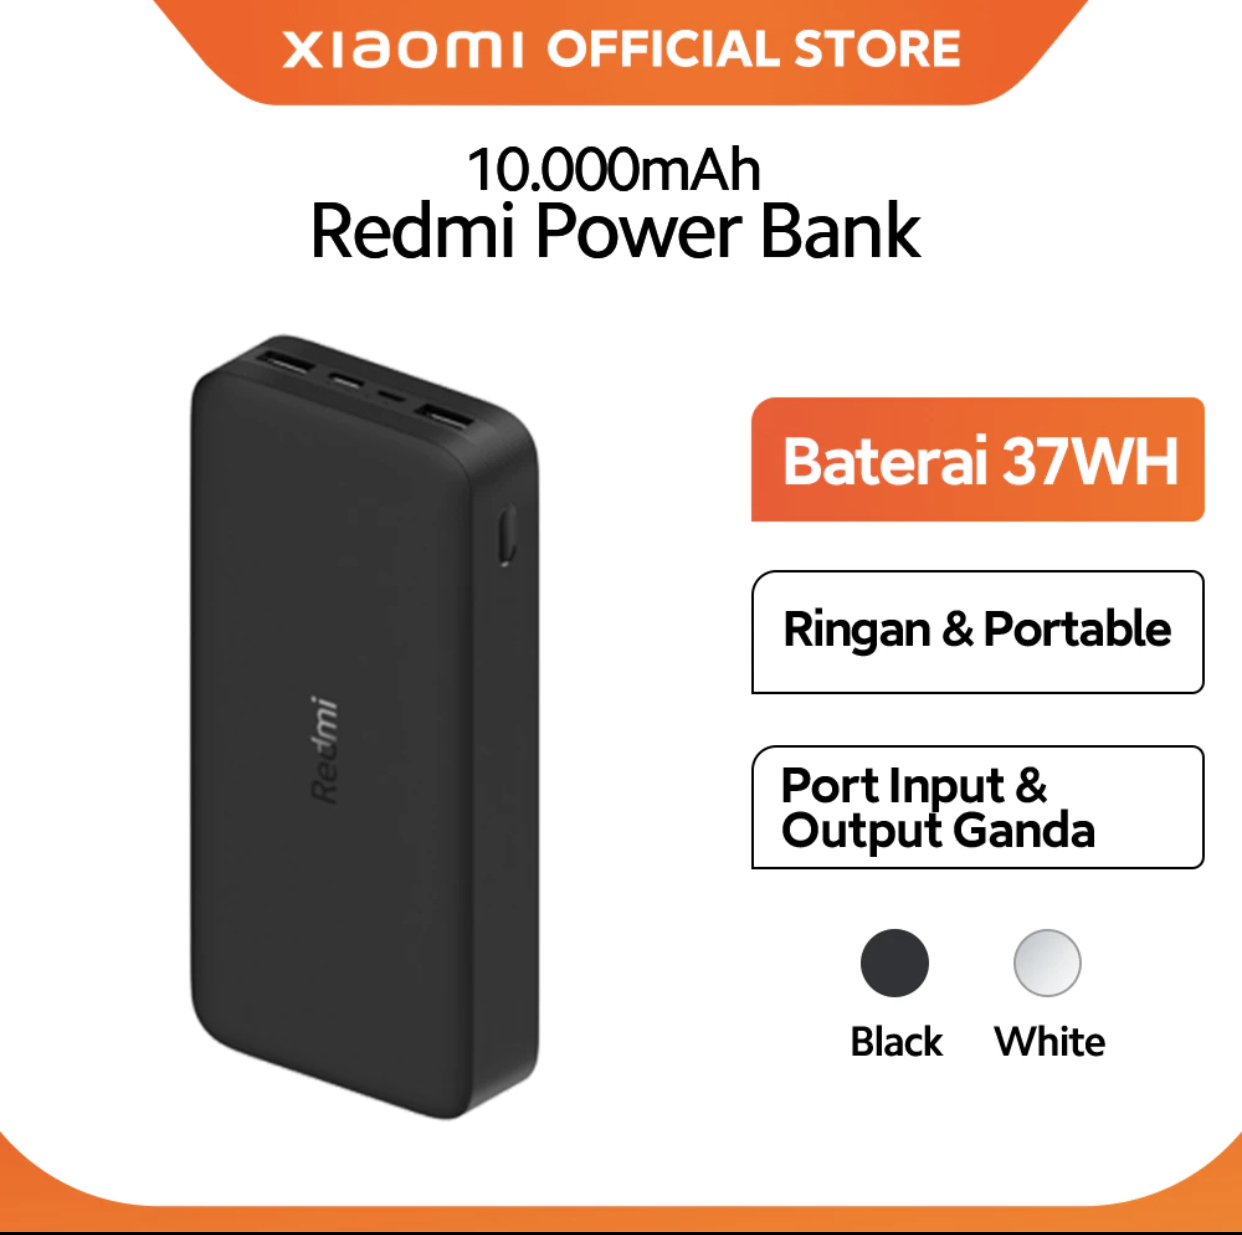 26. Xiaomi redmi power bank 10.000mAh